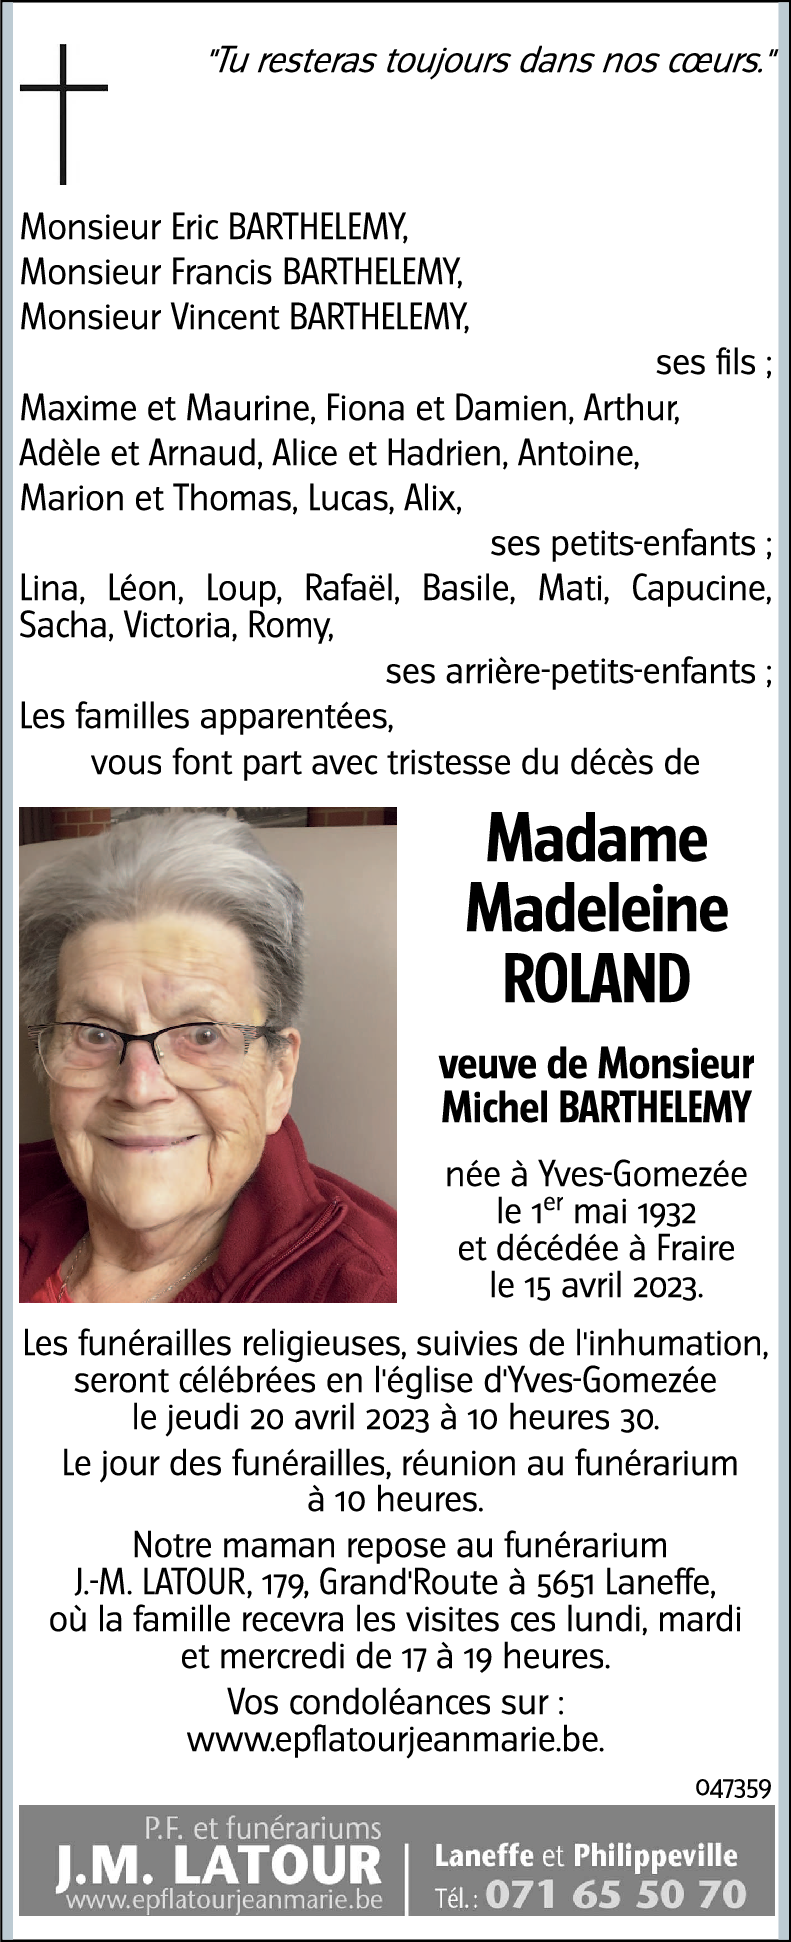 Madeleine ROLAND